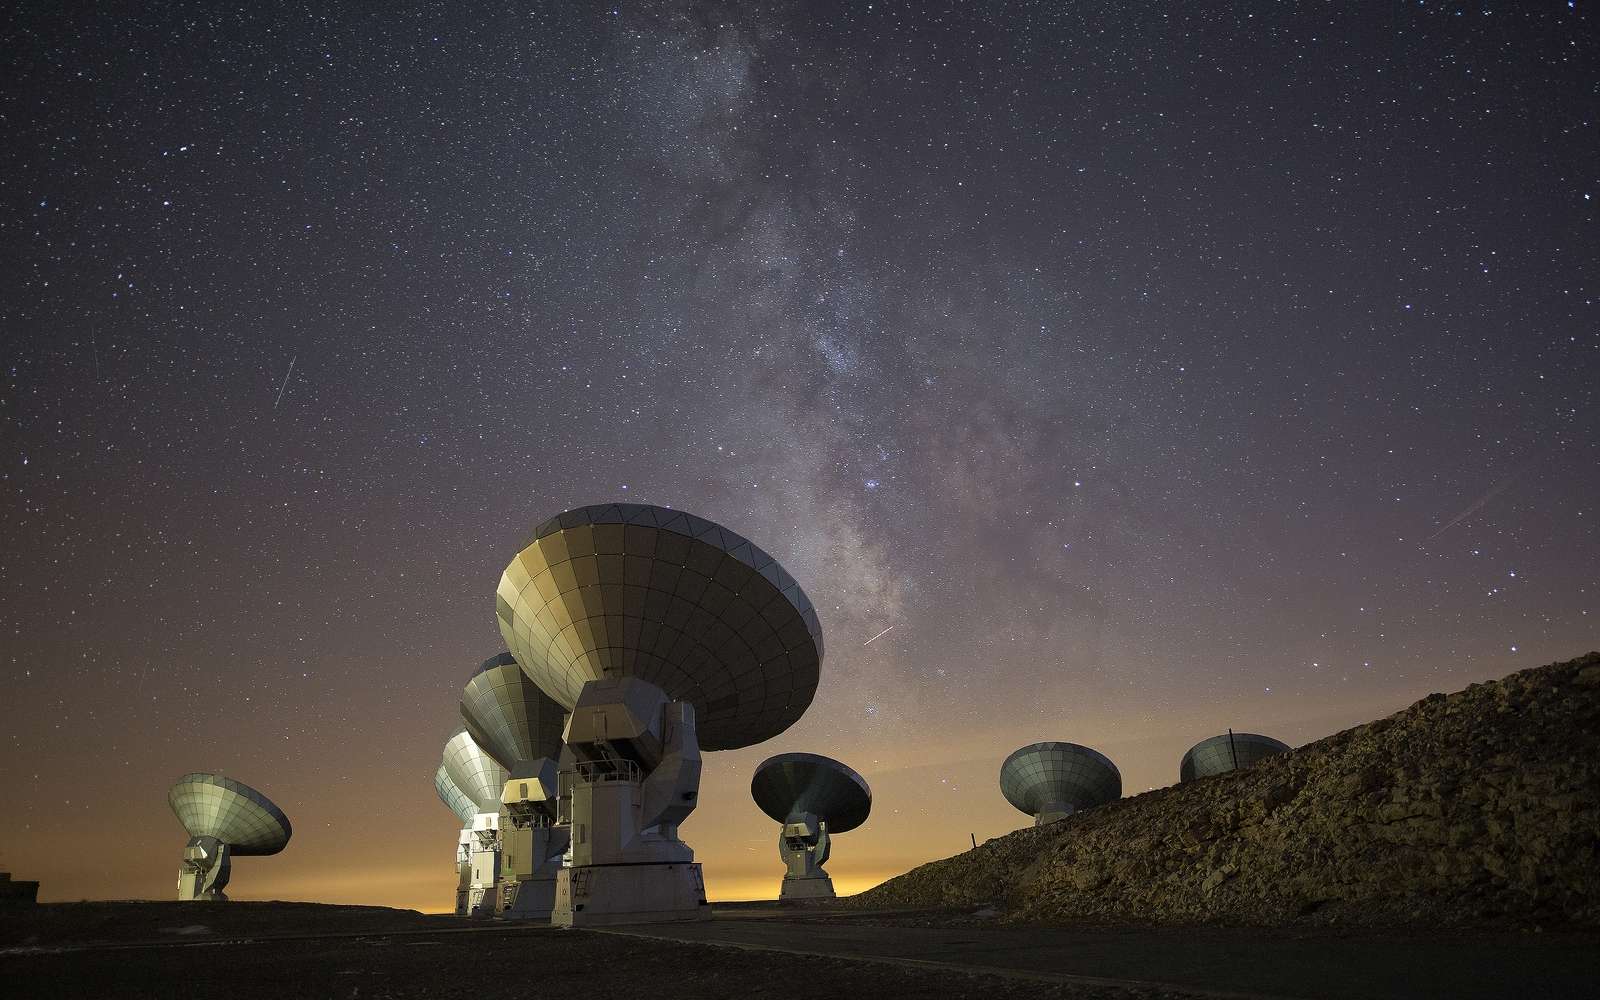 Antennes de l'observatoire NOEMA (MPG/Allemagne, CNRS/France, IGN/Espagne) le radiotélescope le plus puissant de l'hémisphère nord. L'observatoire opère à plus de 2.500 mètres d'altitude sur l'un des sites européens de haute altitude les plus étendus, le plateau de Bure dans les Alpes françaises. Le télescope est exploité par l'Institut de Radioastronomie Millimétrique (Iram) et est financé par la Société Max-Planck (Allemagne), le Centre National de Recherche Scientifique (France) et l'Instituto Geografico Nacional (Espagne). © IRAM-gre , CC by-sa 4.0